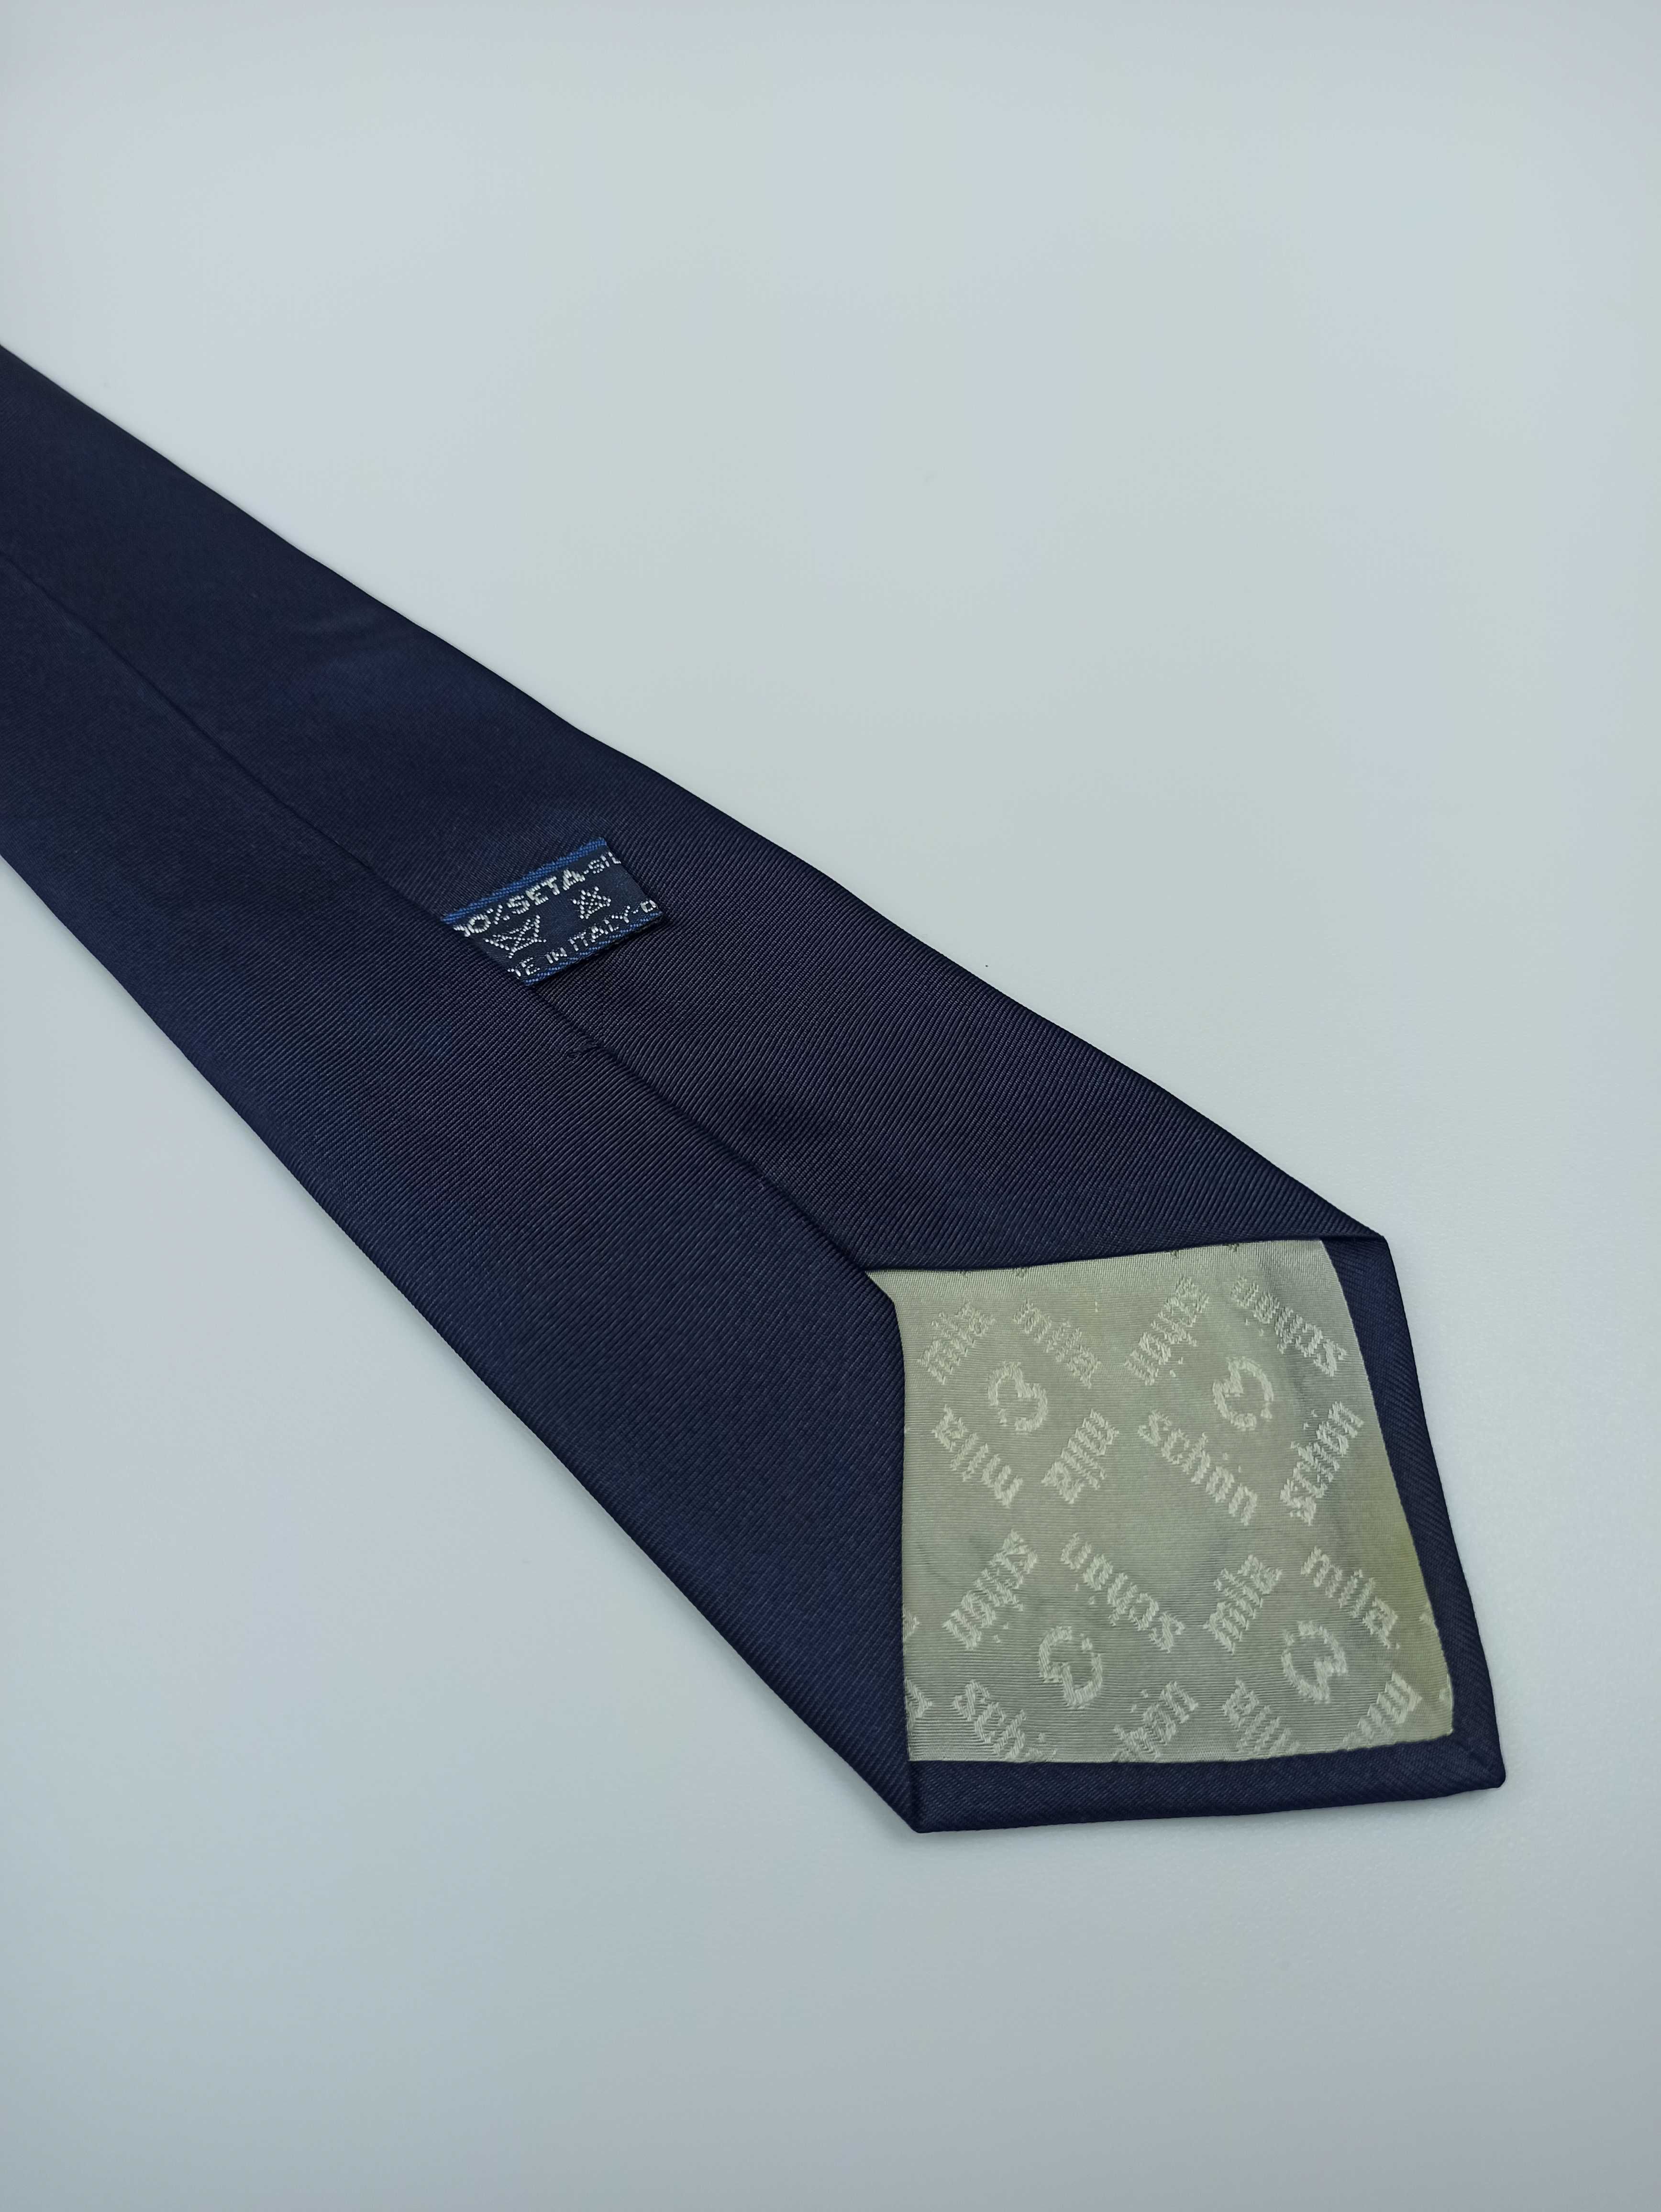 Mila Schon niebieski jedwabny krawat w paski vintage retro fa36